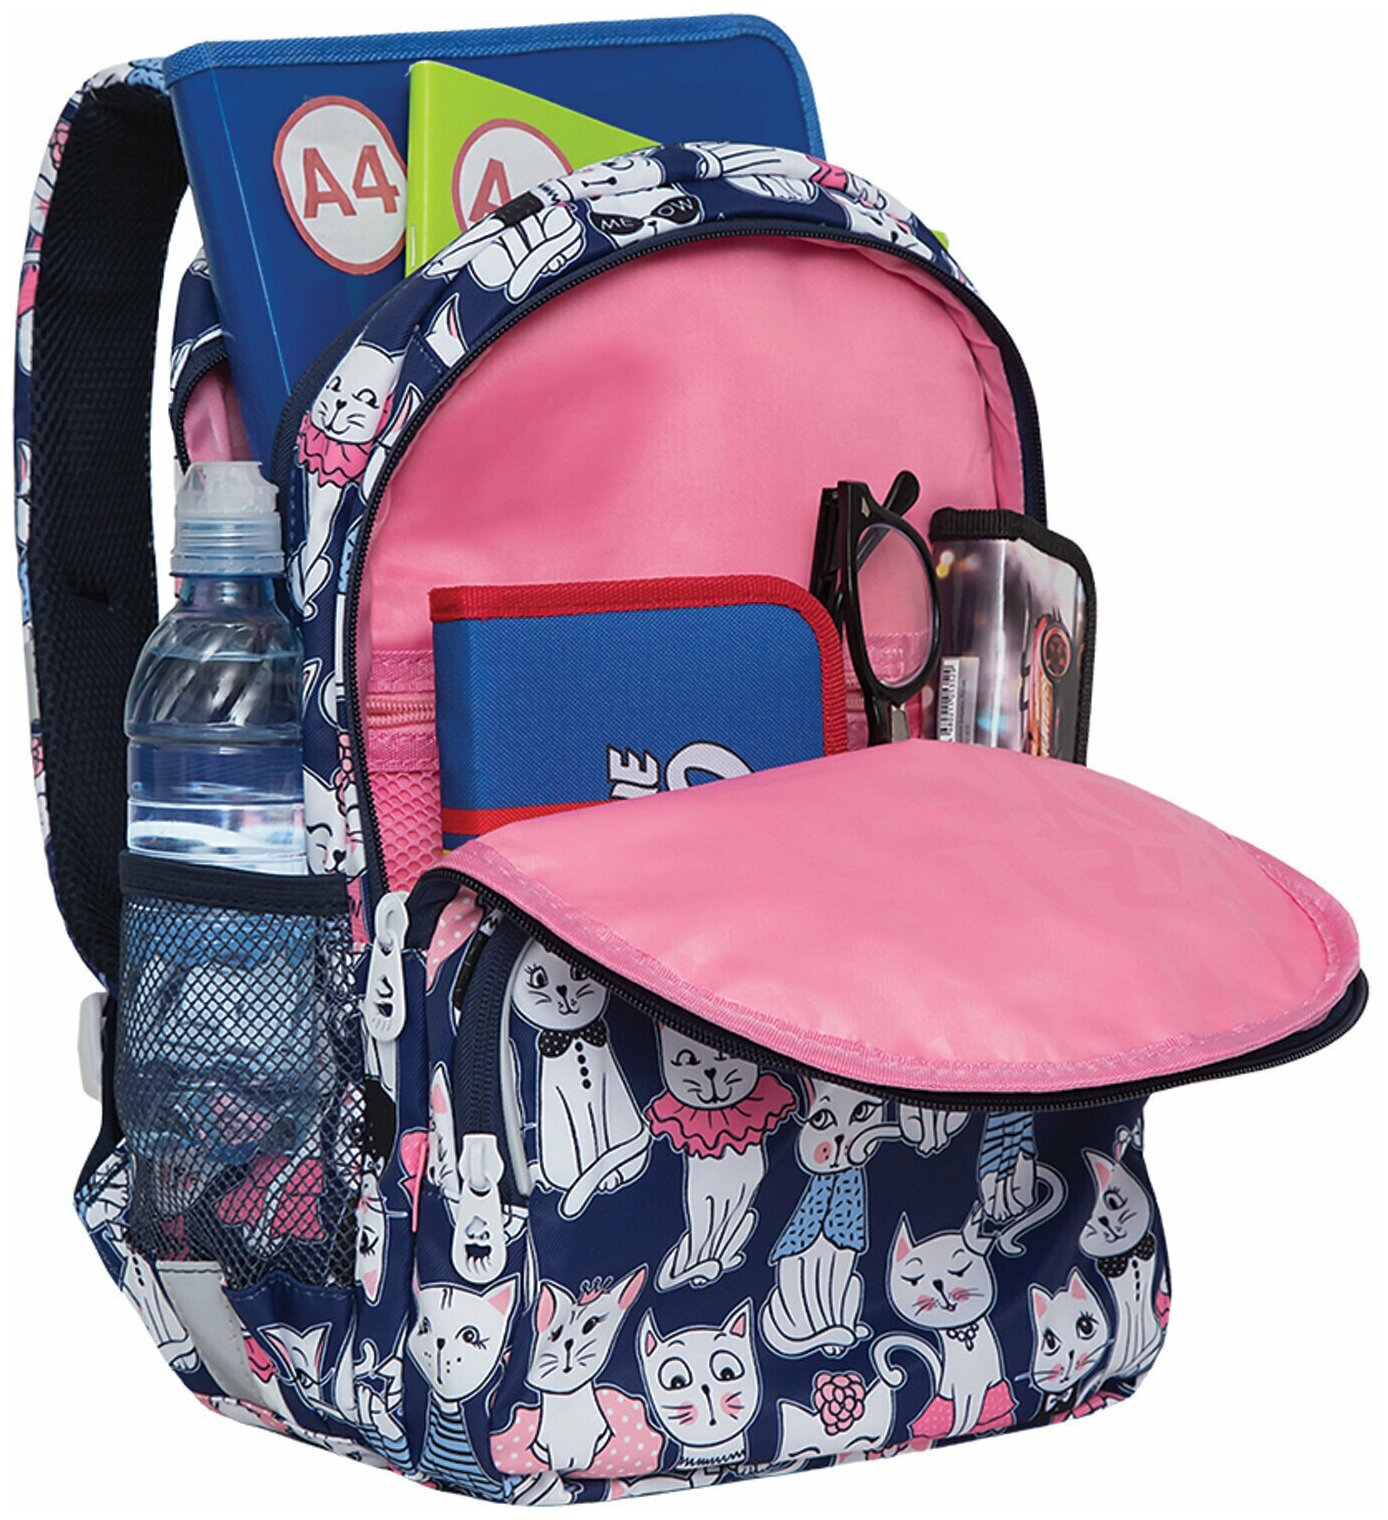 Рюкзак GRIZZLY школьный, анатомическая спинка, карман для ноутбука, для девочек, «Мяу», 40×27×20 см, RG-160-4/1